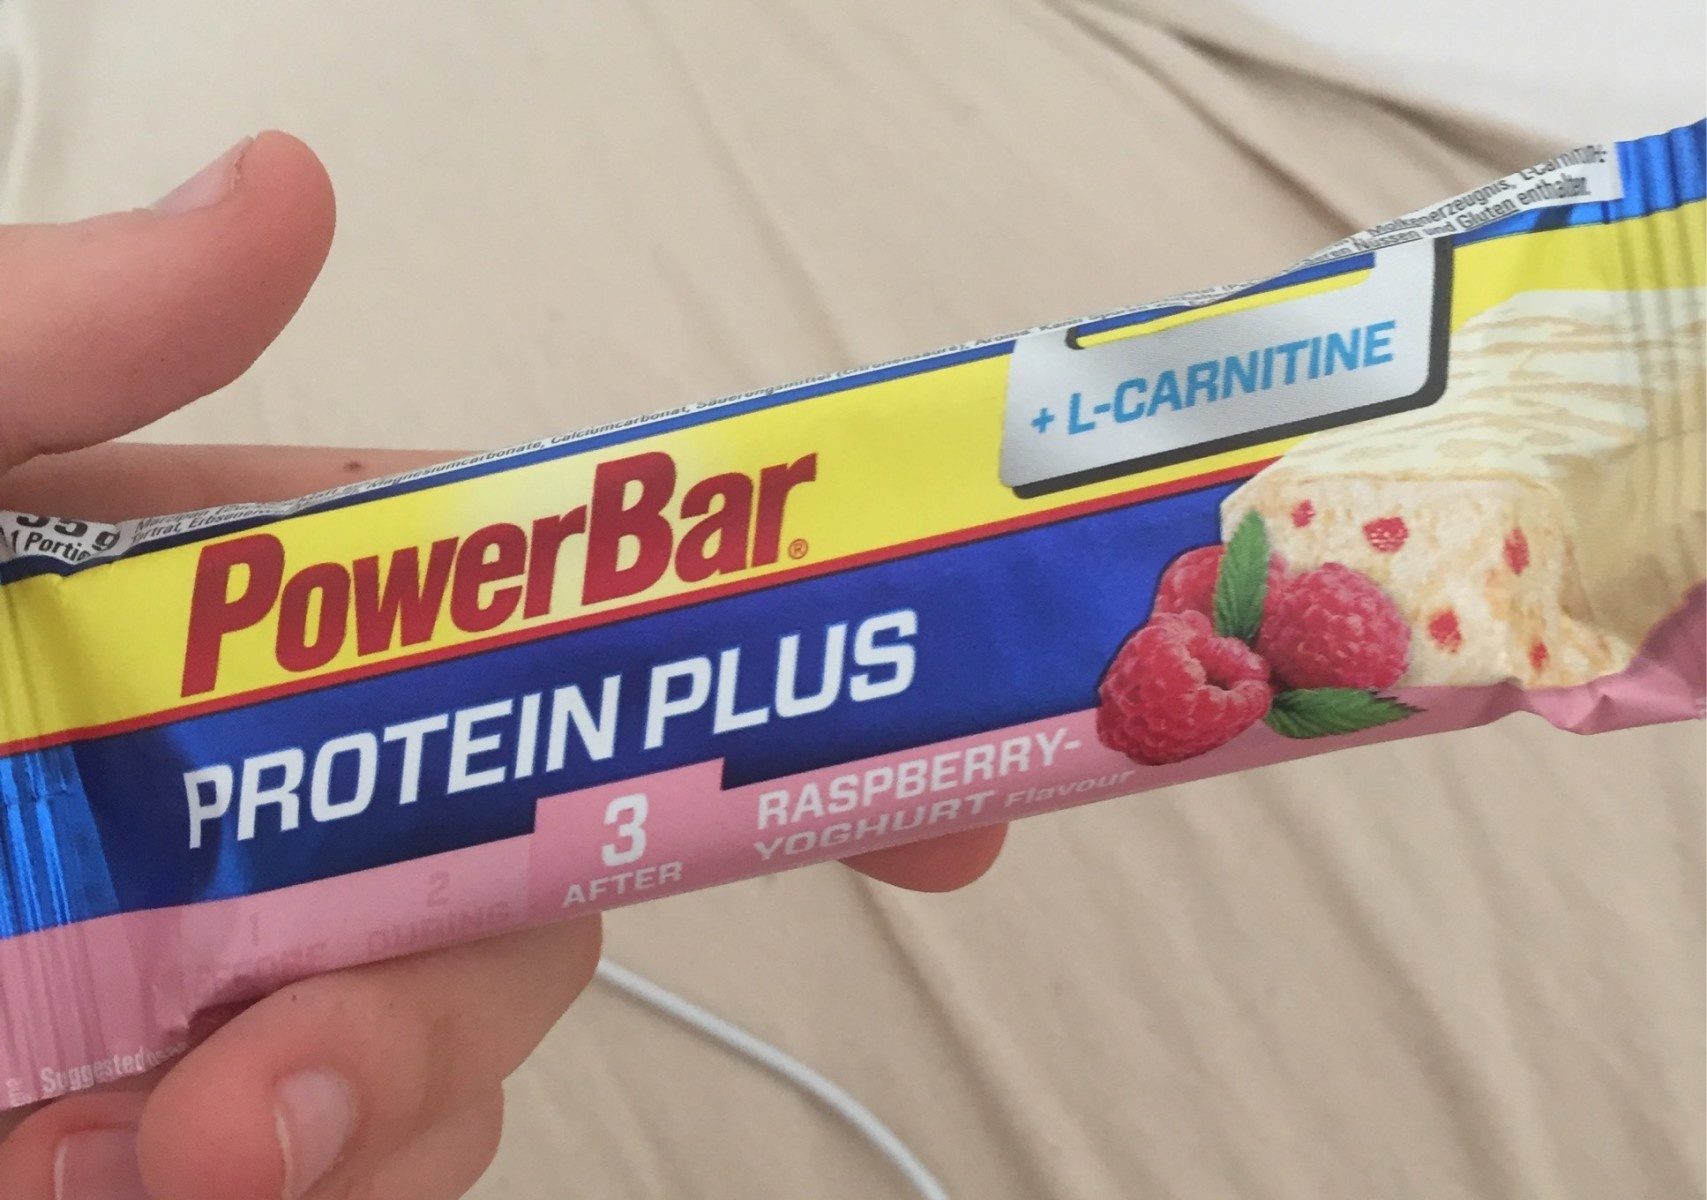 Barre Powerbar Protéine Plus + L-carnitine 35G - Producte - fr